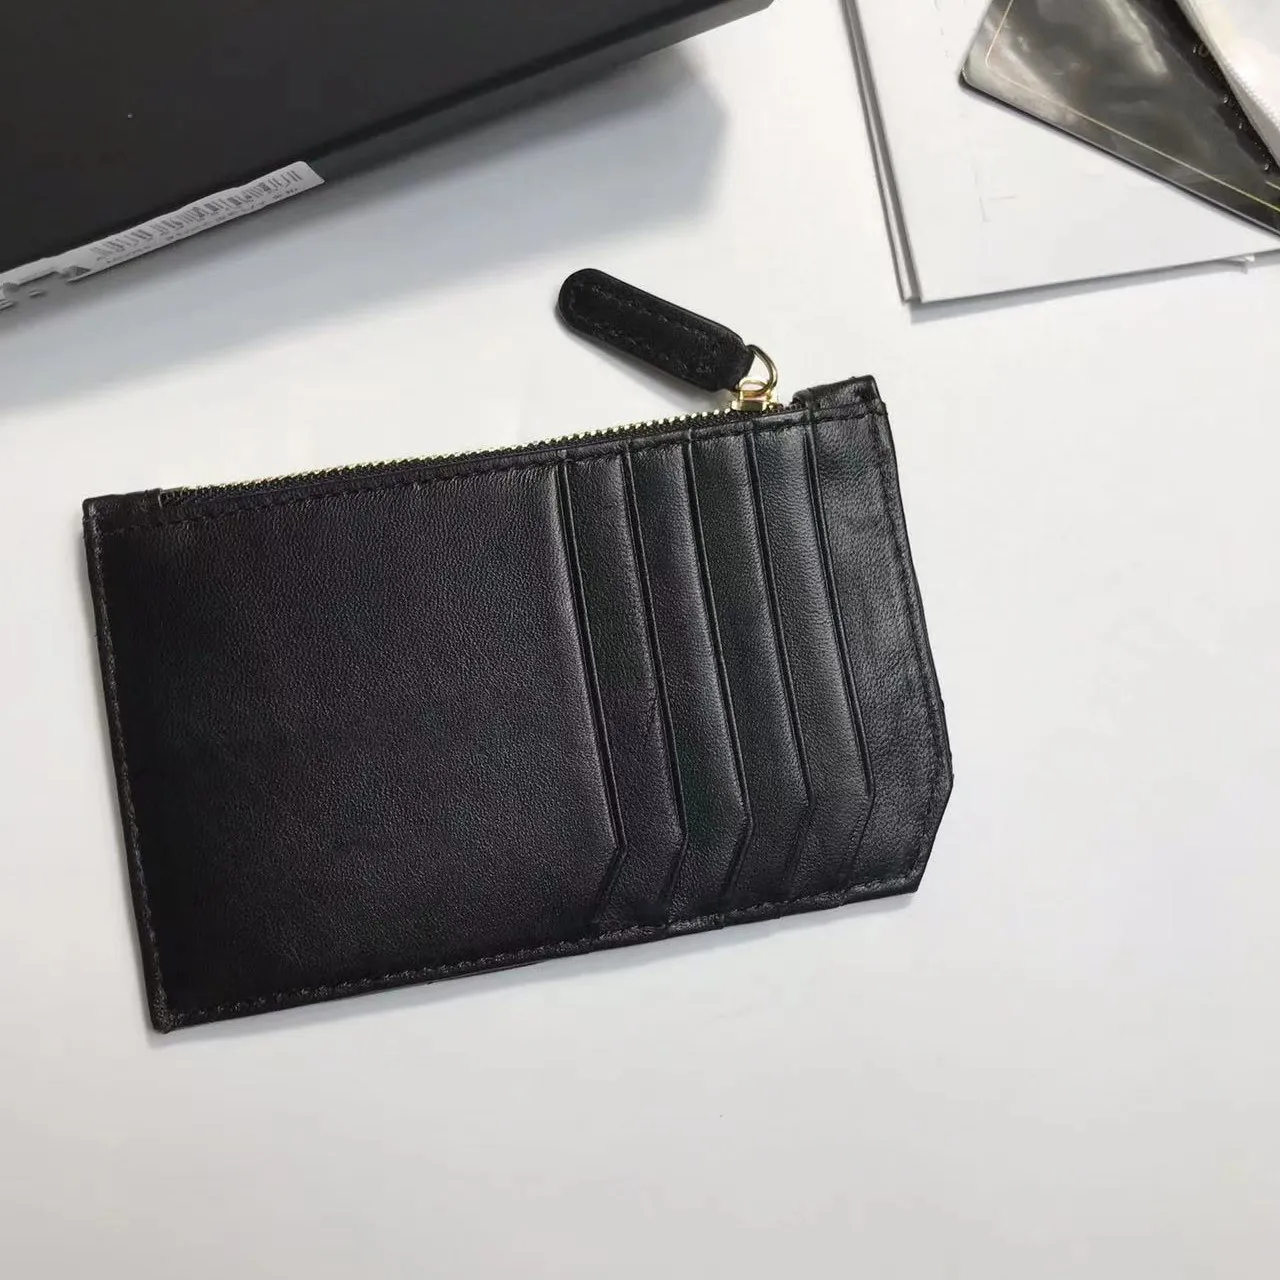 코인 포켓을 가진 타탄 가죽 카드 홀더 - 디자이너 Zippy Wallet in Lamskin Caviar 최고 품질의 하드웨어 및 더스트 백